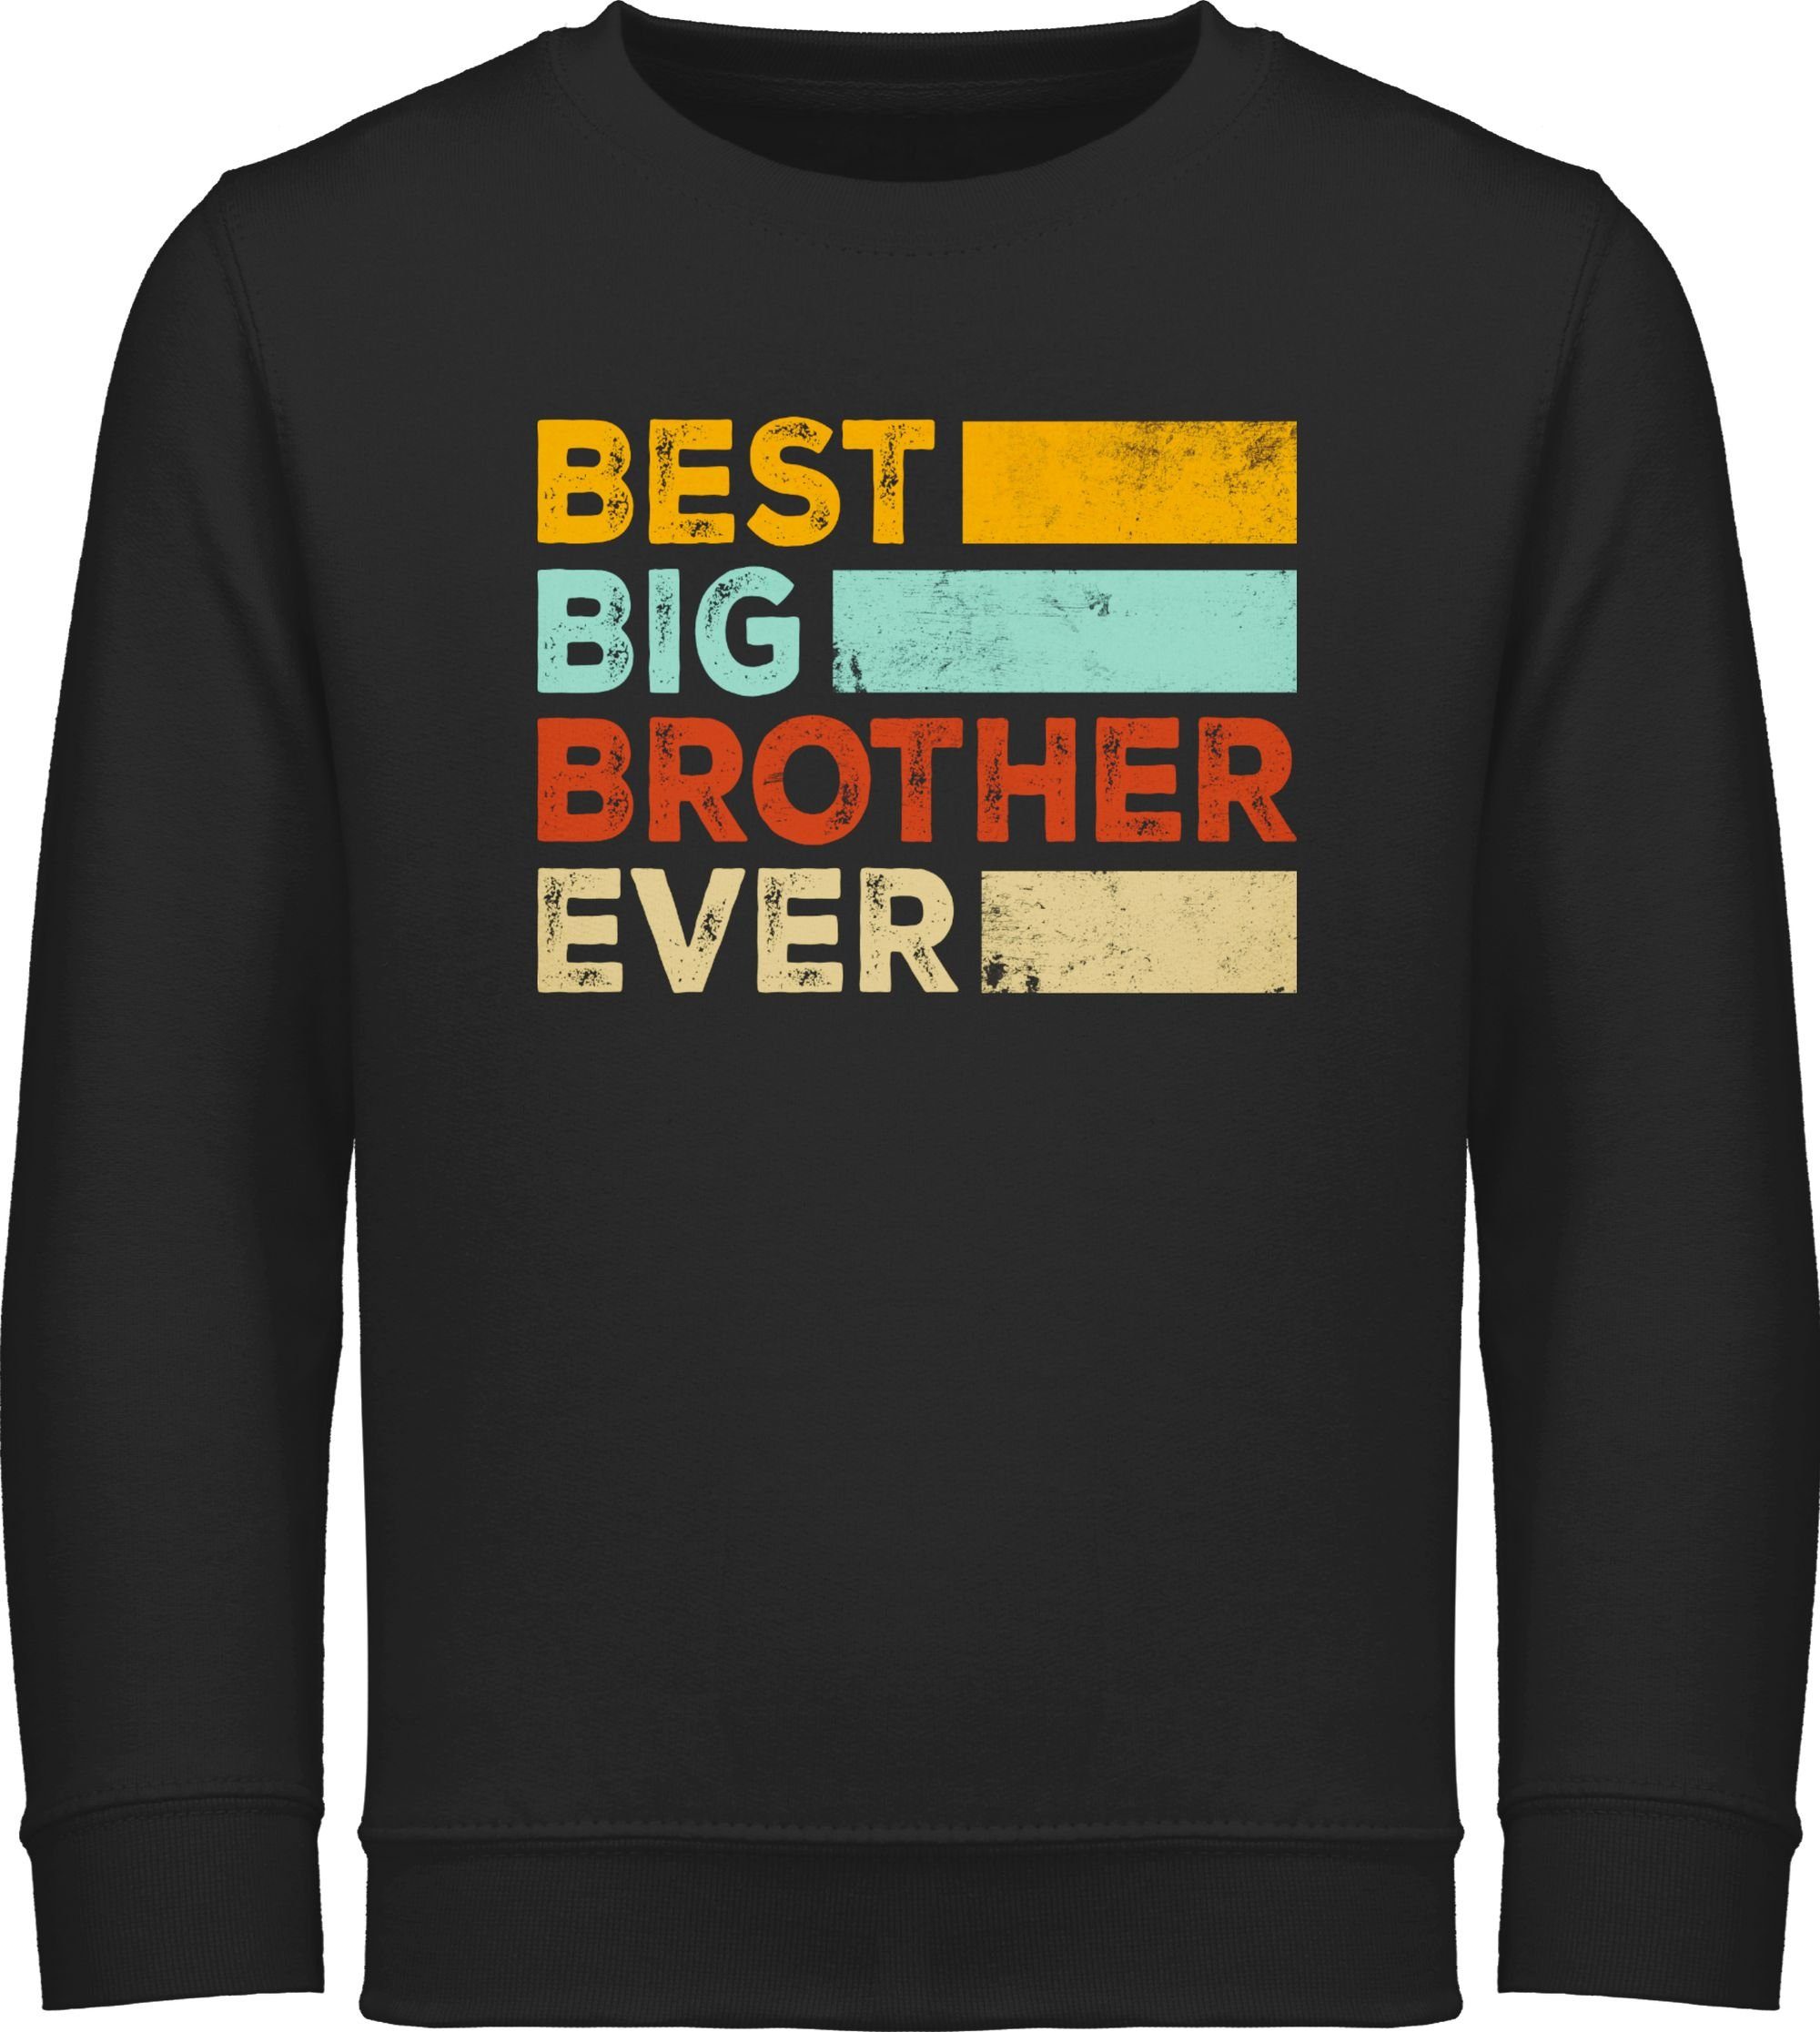 Zeiten Geschenk aller Shirtracer 2 Bruder Best Großer Sweatshirt Bruder Brother großer Big Schwarz Ever Bester